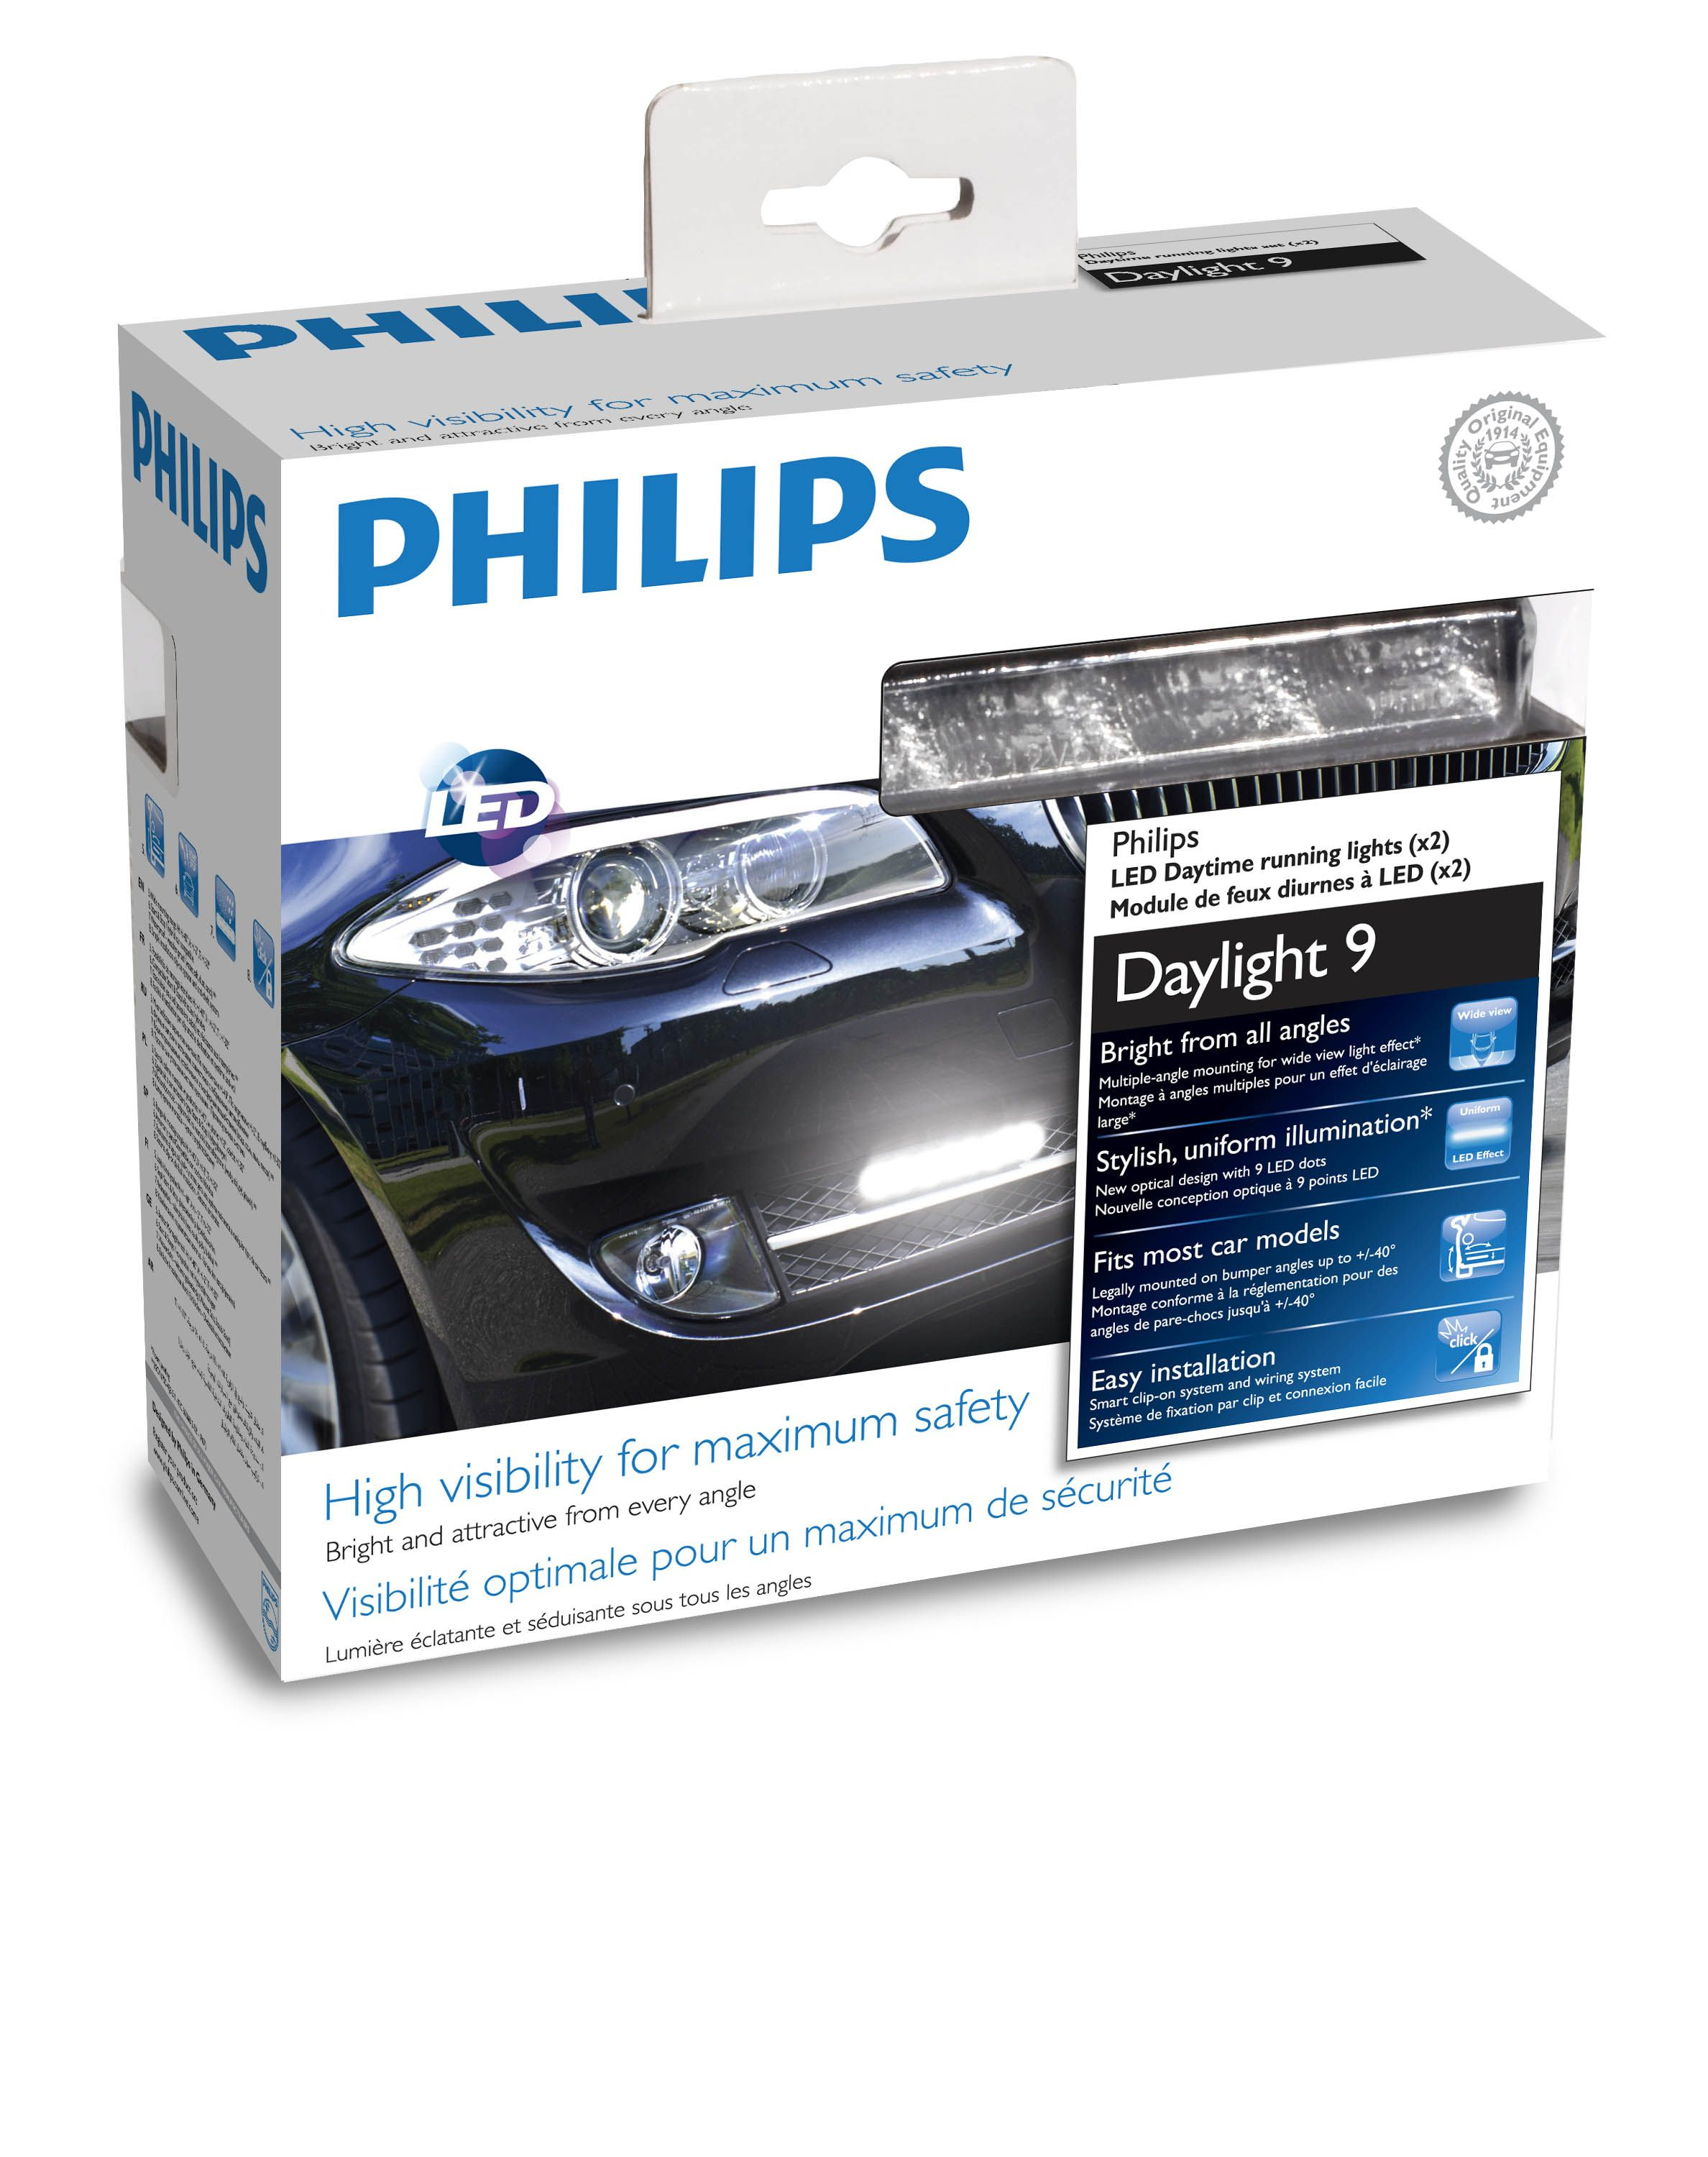 Philips DayLight 9 12831WLEDX1 LED Daytime Running Lights